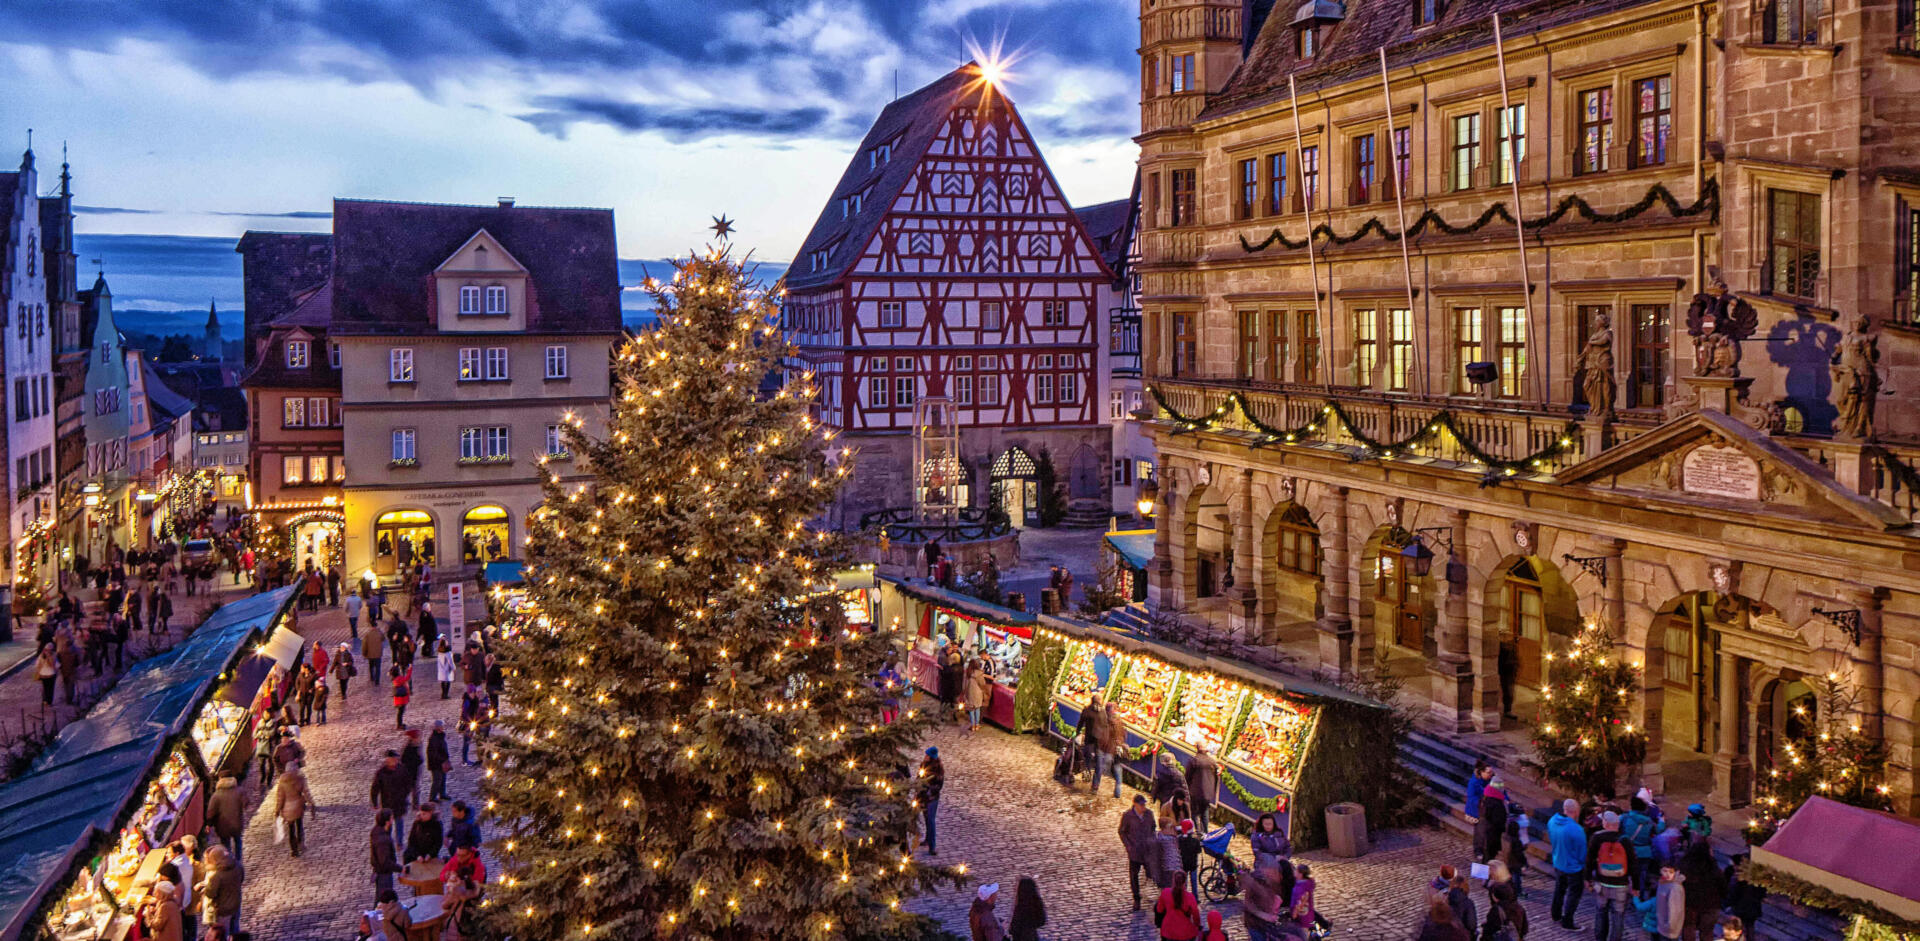 Der Rothenburger Reiterlesmarkt zählt mit seiner über 500-jährigen Tradition zu den ältesten und schönsten Weihnachtsmärkten Deutschlands. Nirgendwo sonst ergibt das Zusammenspiel der Traumkulisse des Mittelalters und der liebevoll dekorierten Weihnachtsmarktbuden eine so stimmungsvolle Atmosphäre wie hier.